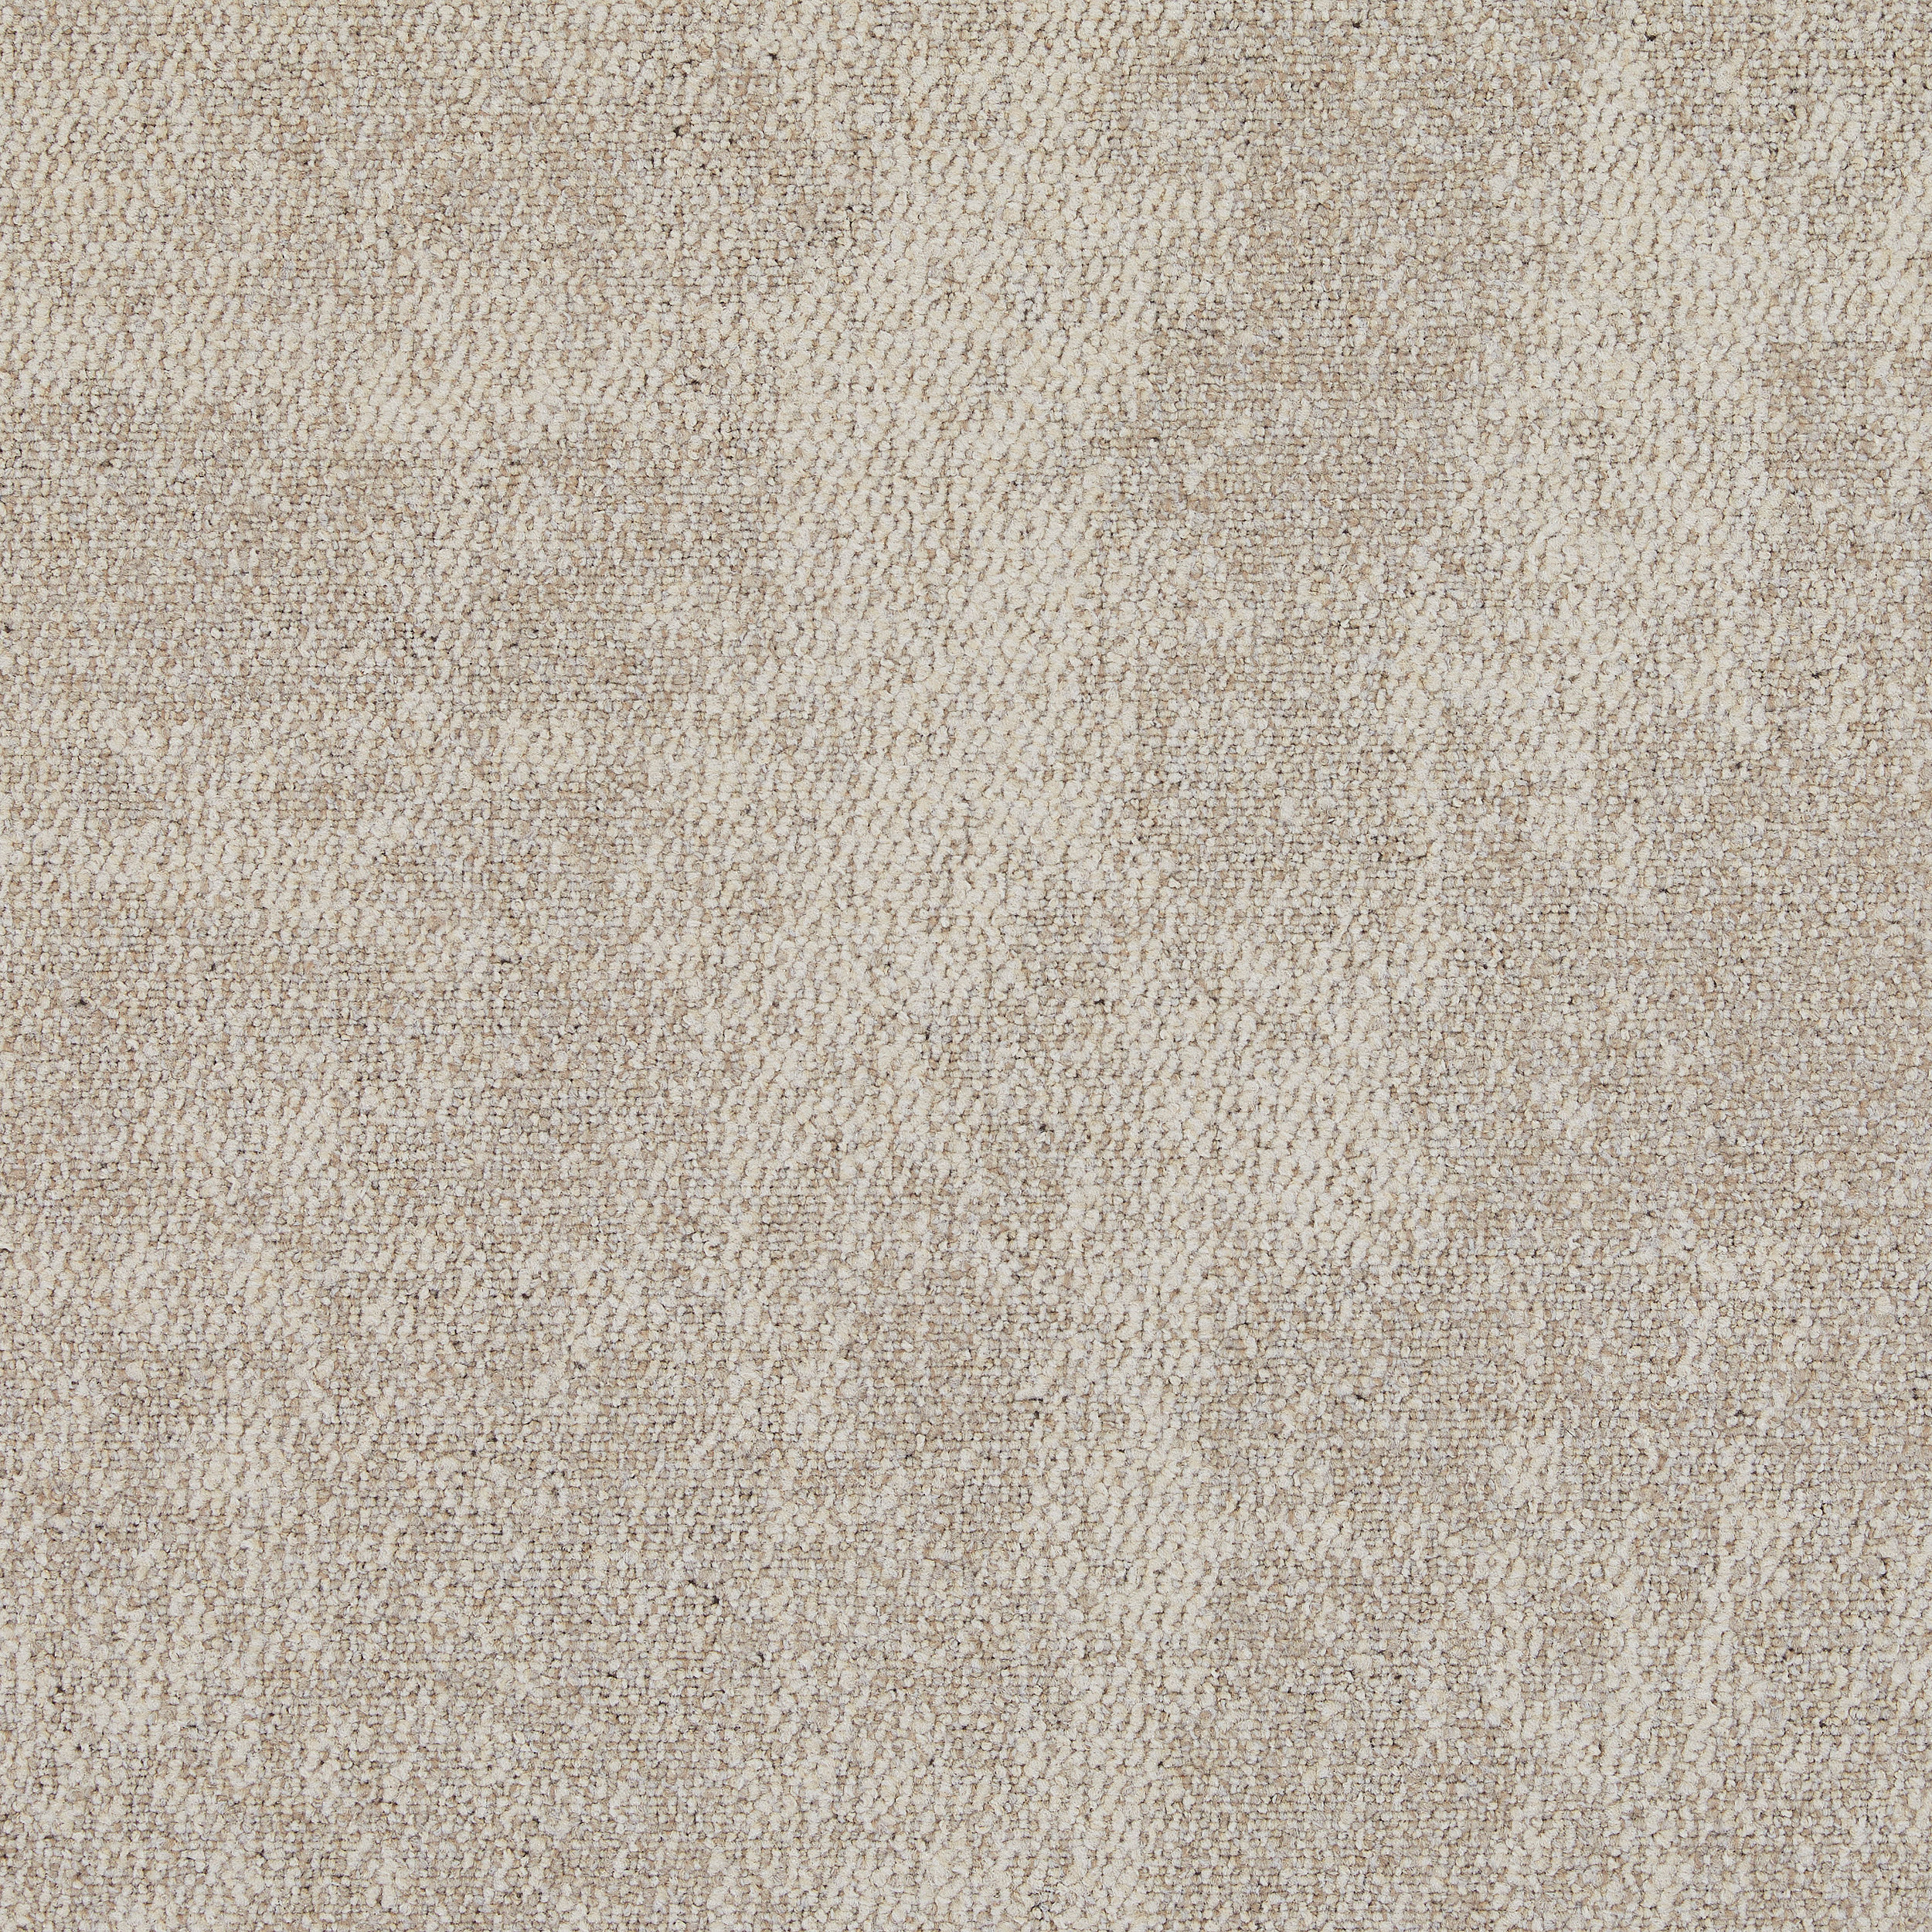 CE100 Carpet Tile in Consider afbeeldingnummer 14